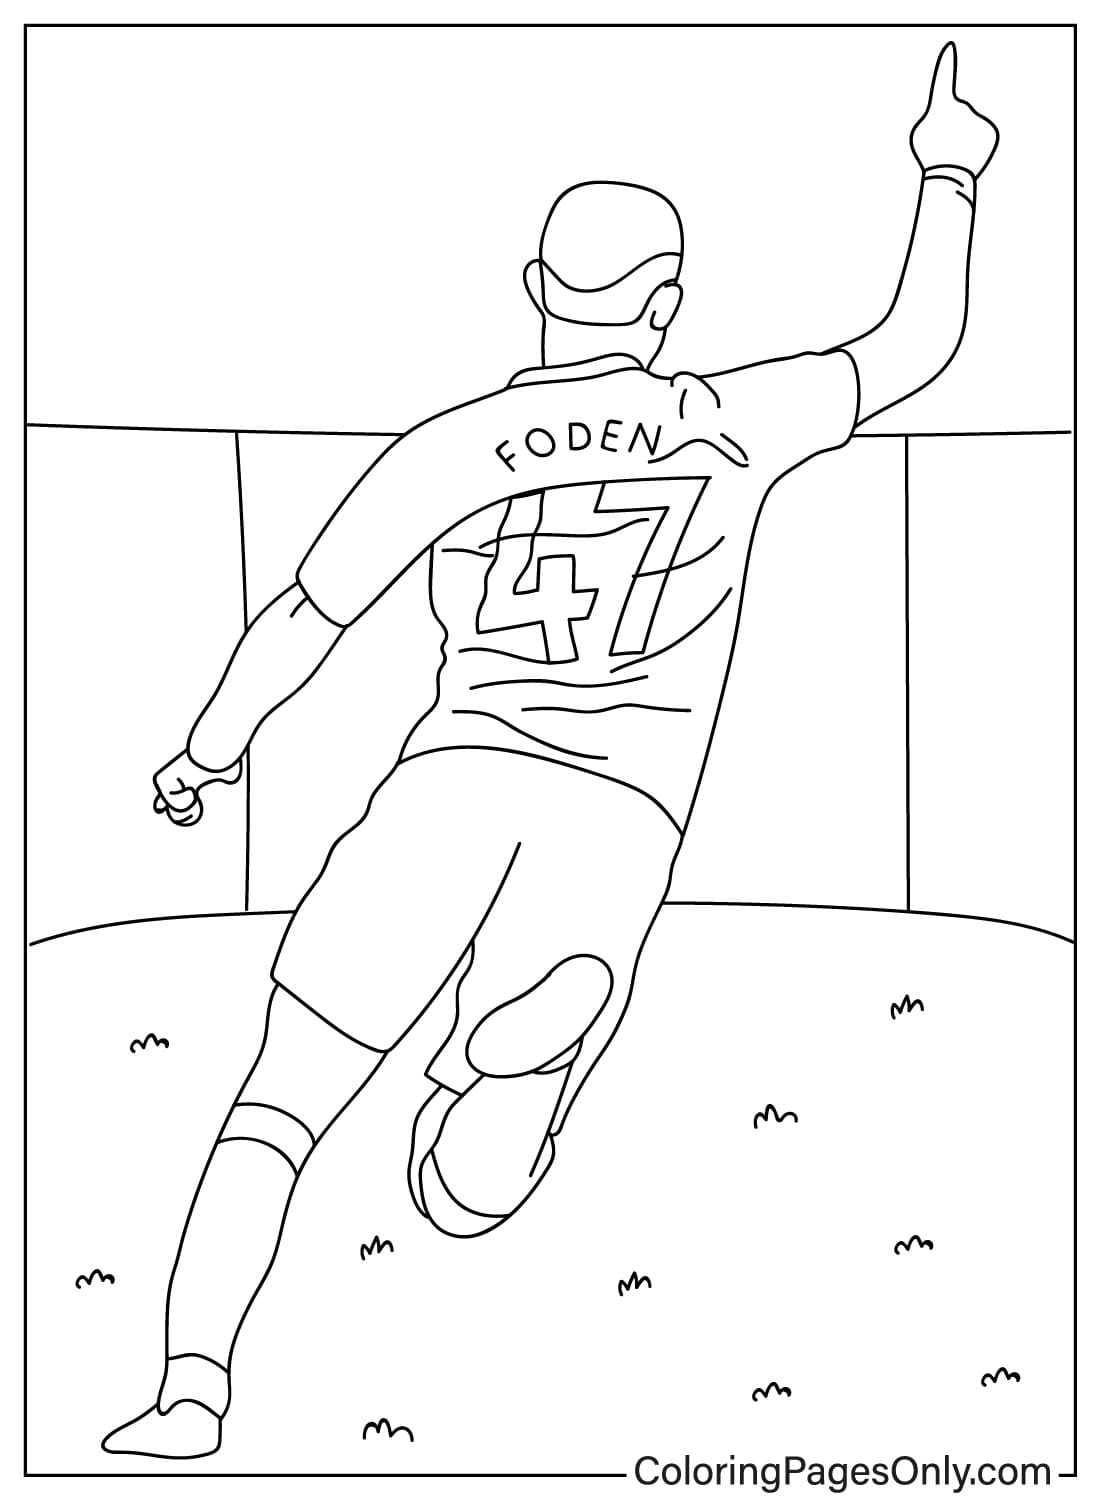 Página para colorear de celebración del gol de Phil Foden de Phil Foden